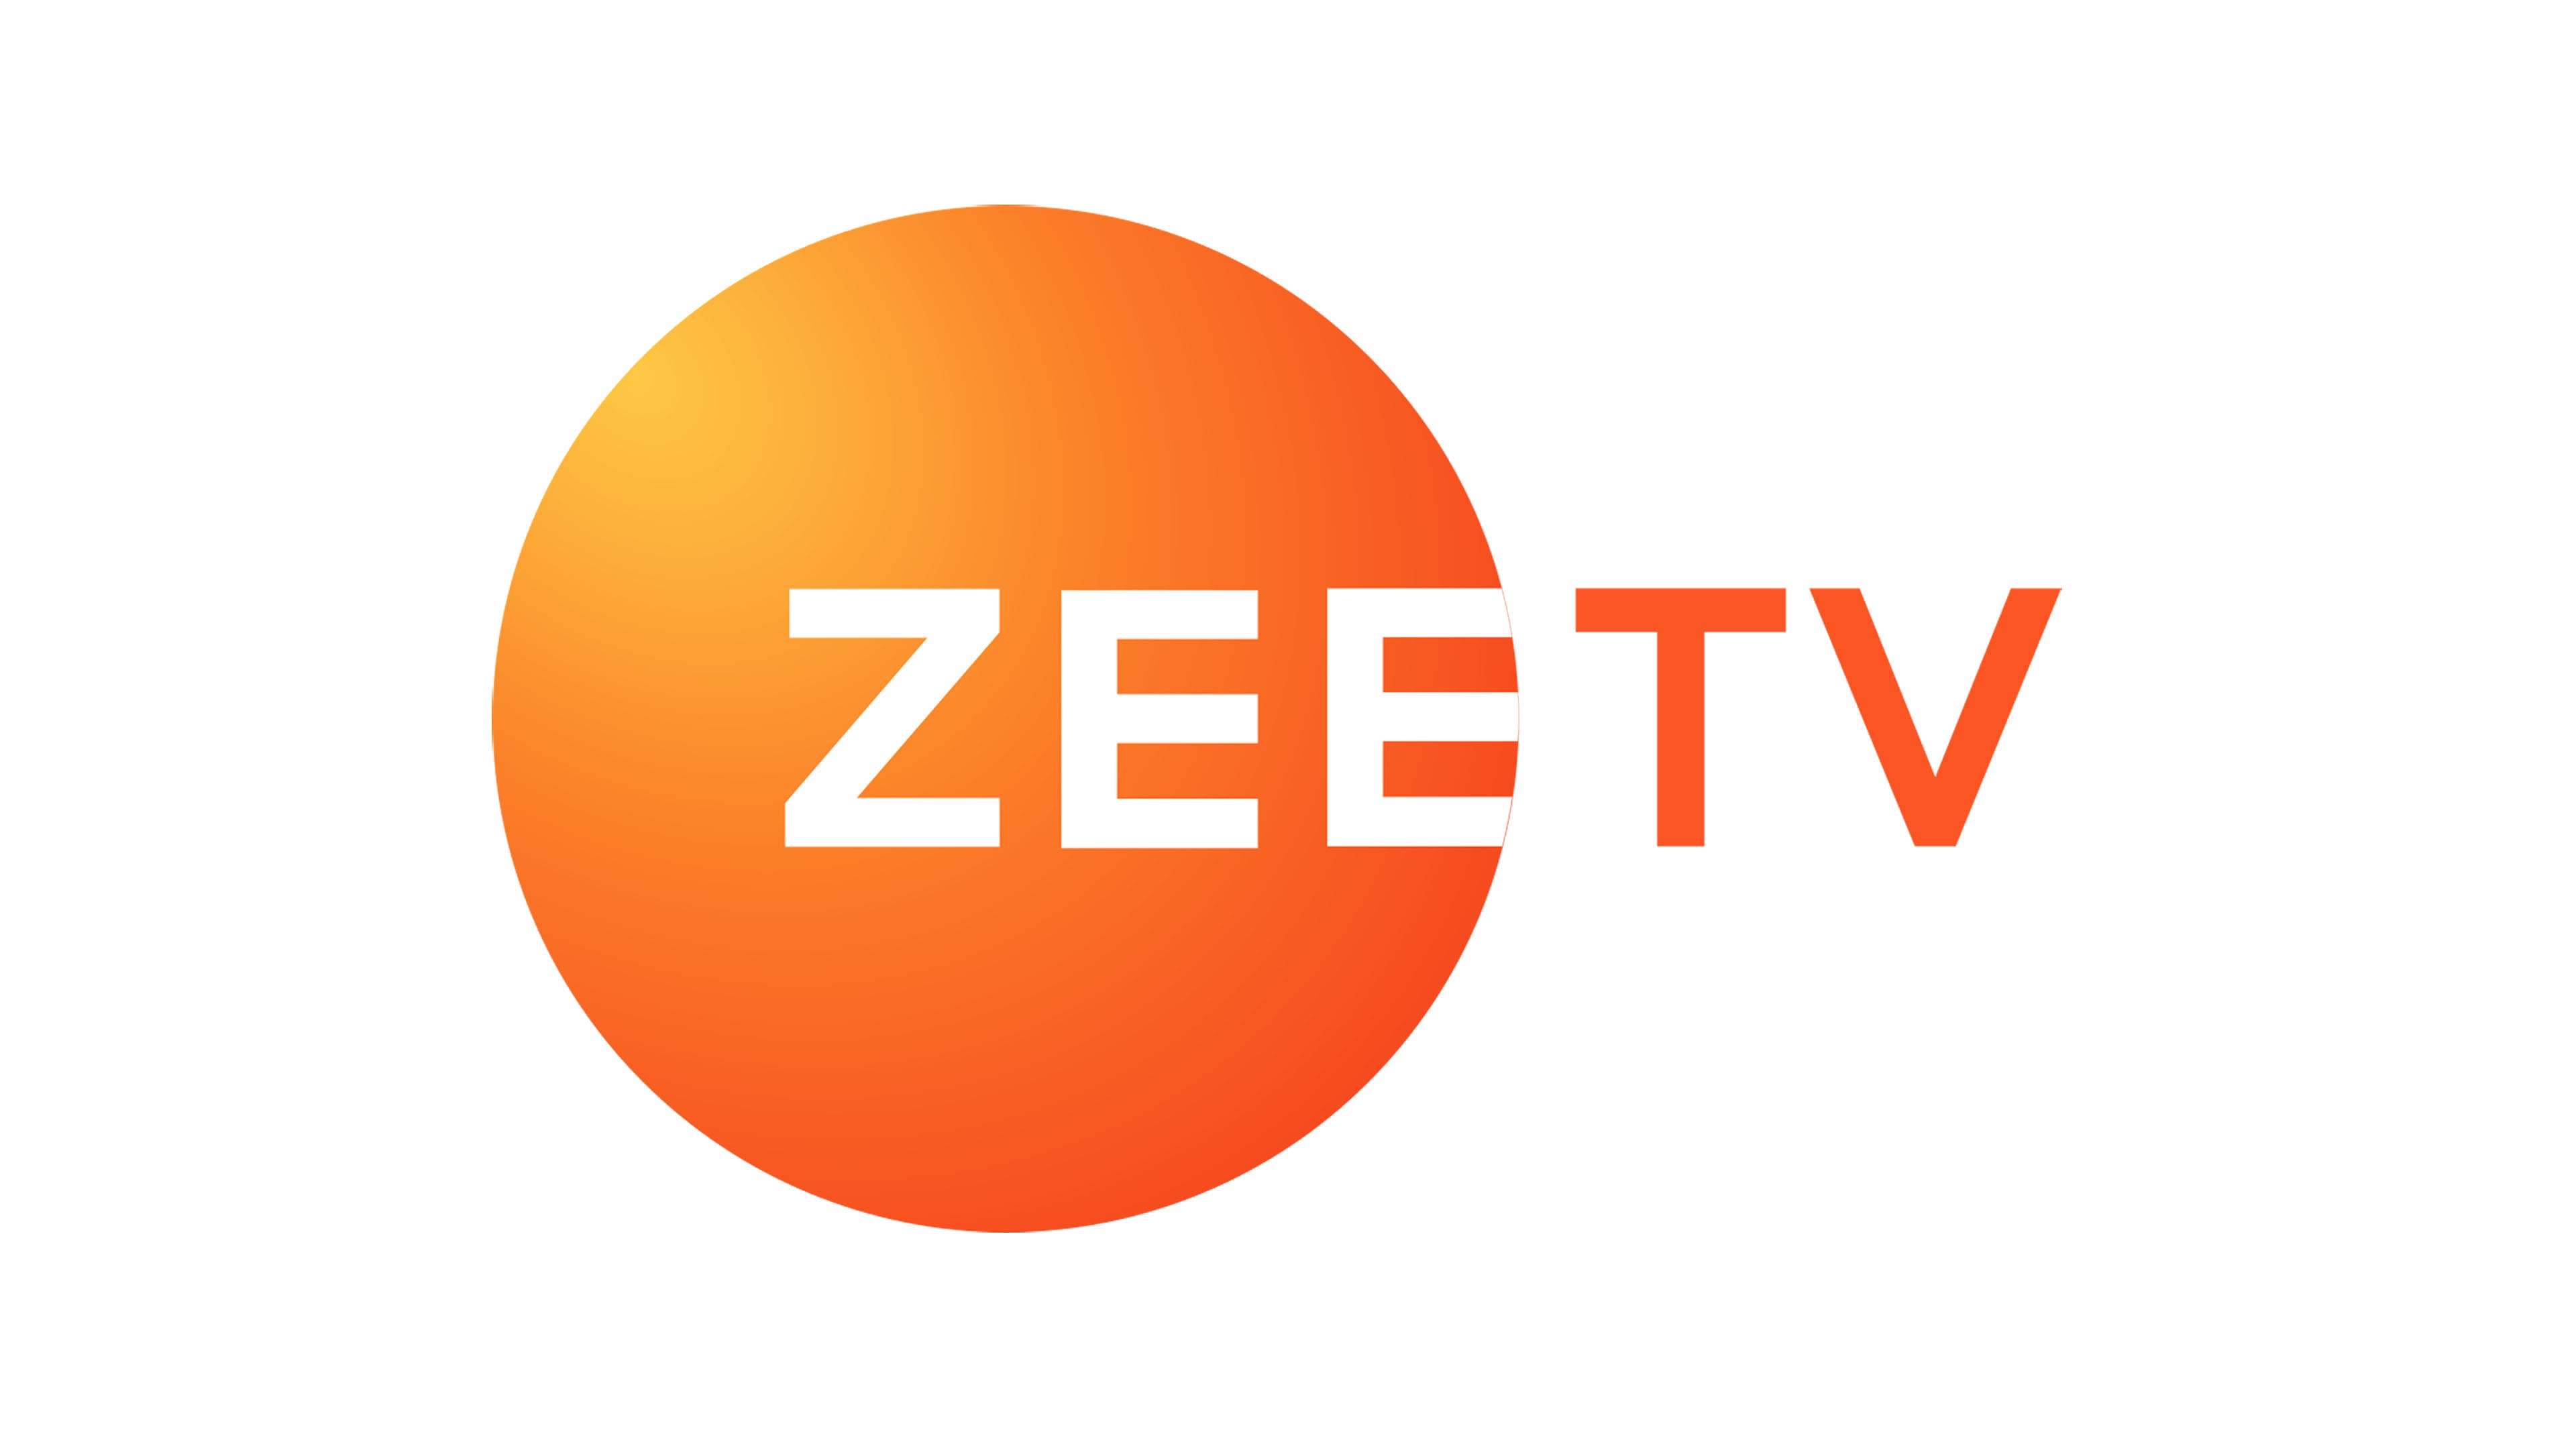 Download Zee Tv Marketing Strategies Wallpaper | Wallpapers.com